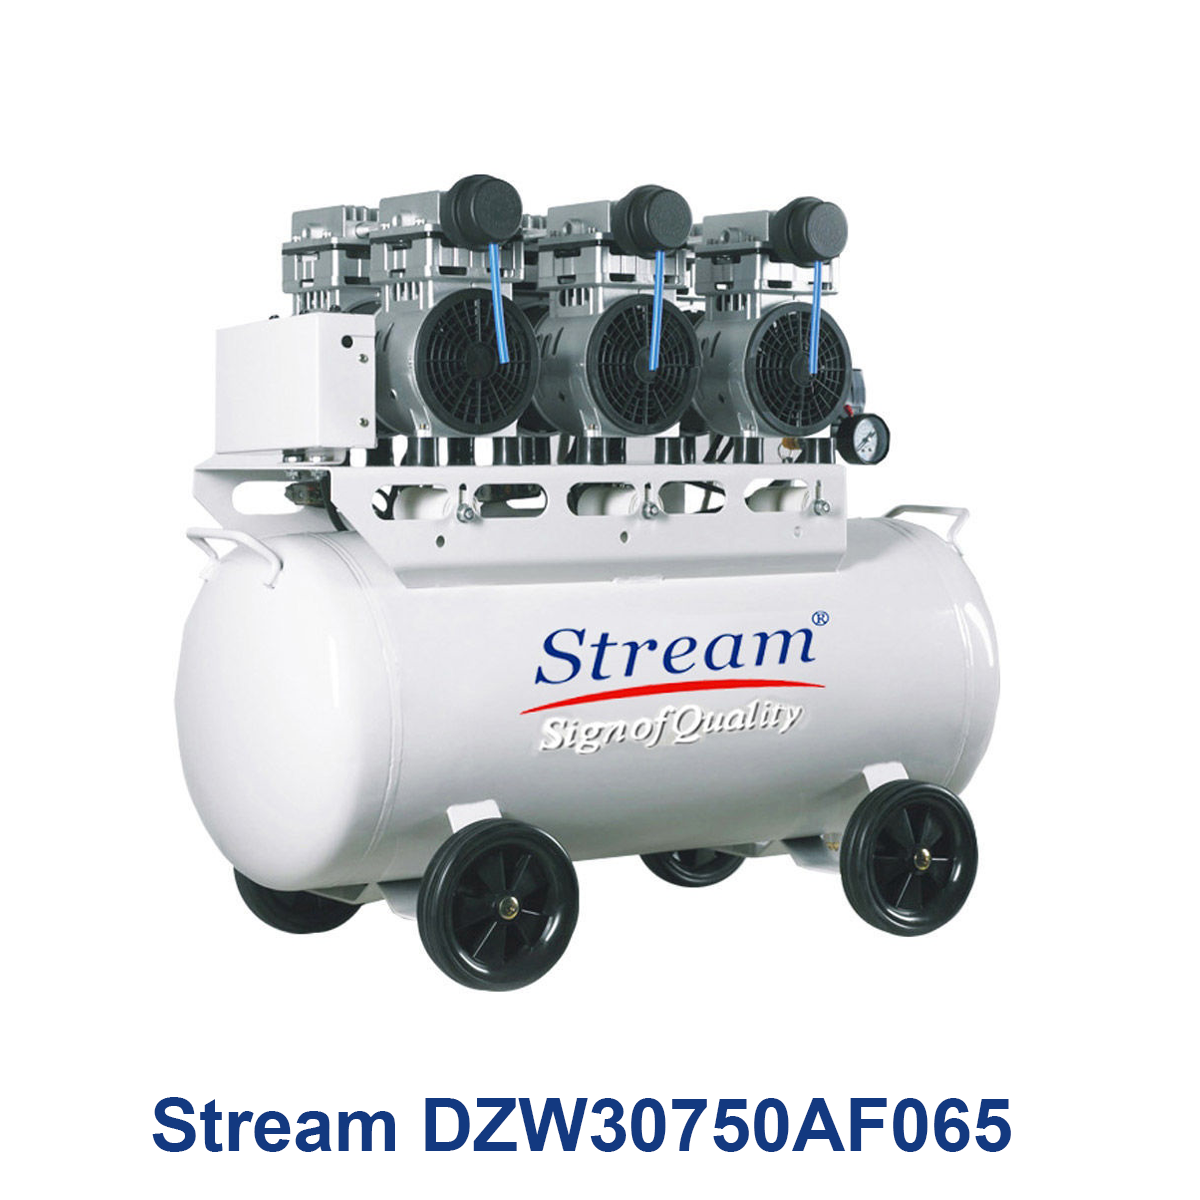 Stream-DZW30750AF065